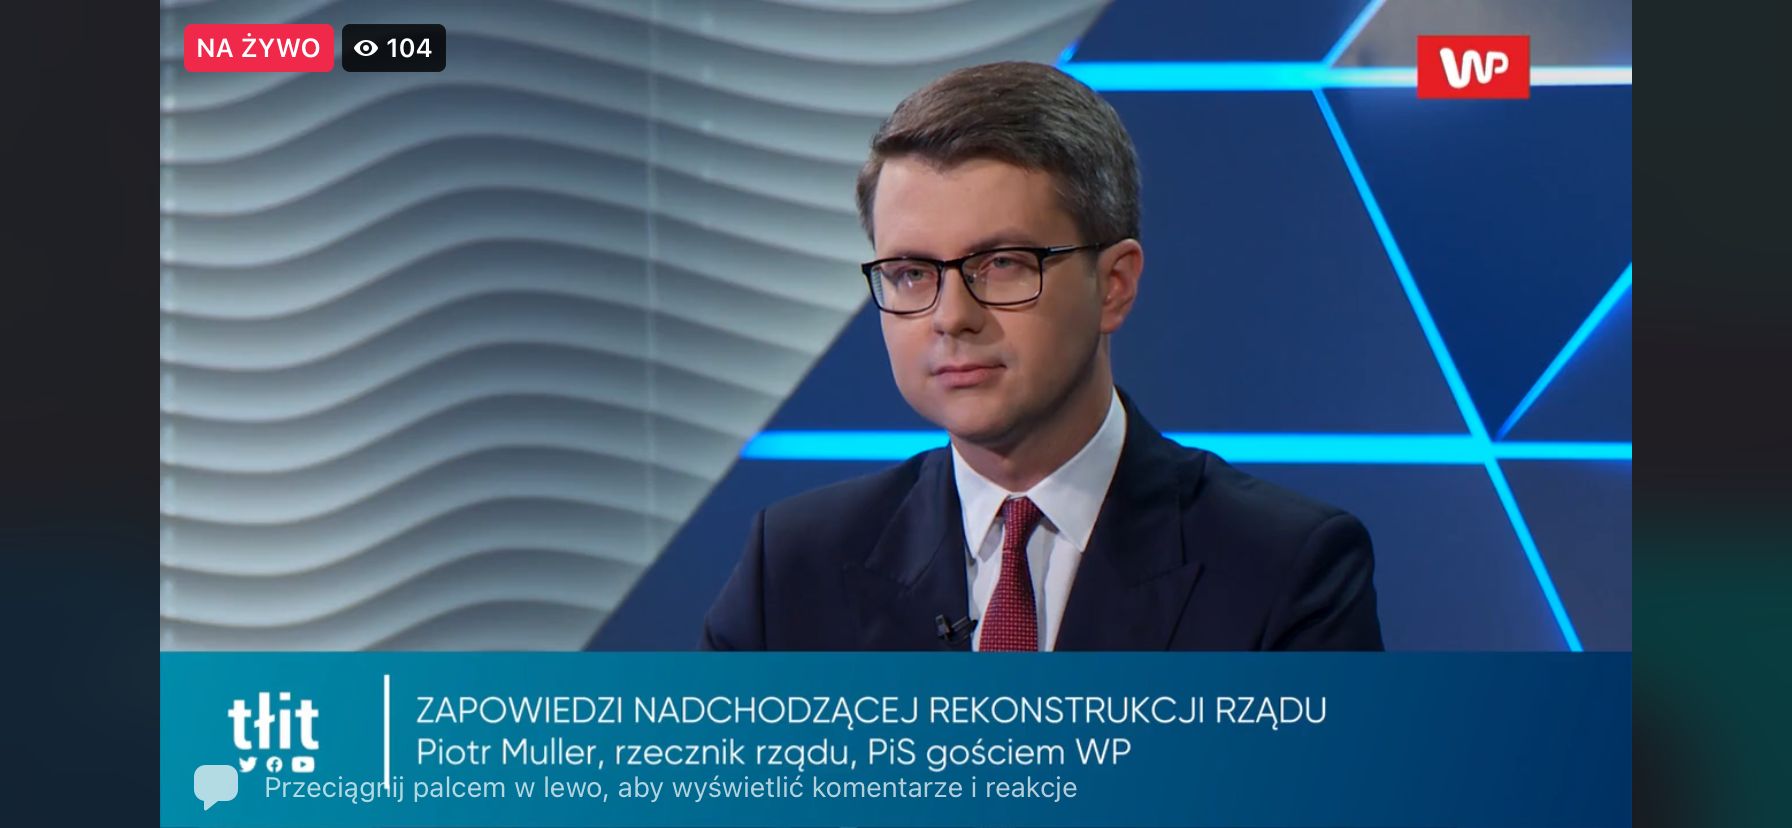 Minister Piotr Müller był dziś gościem w programie Tłit , gdzie rozmawiano m.in. o kolejnych spekulacjach opozycji w związku z rzekomym wyjściem z UE.